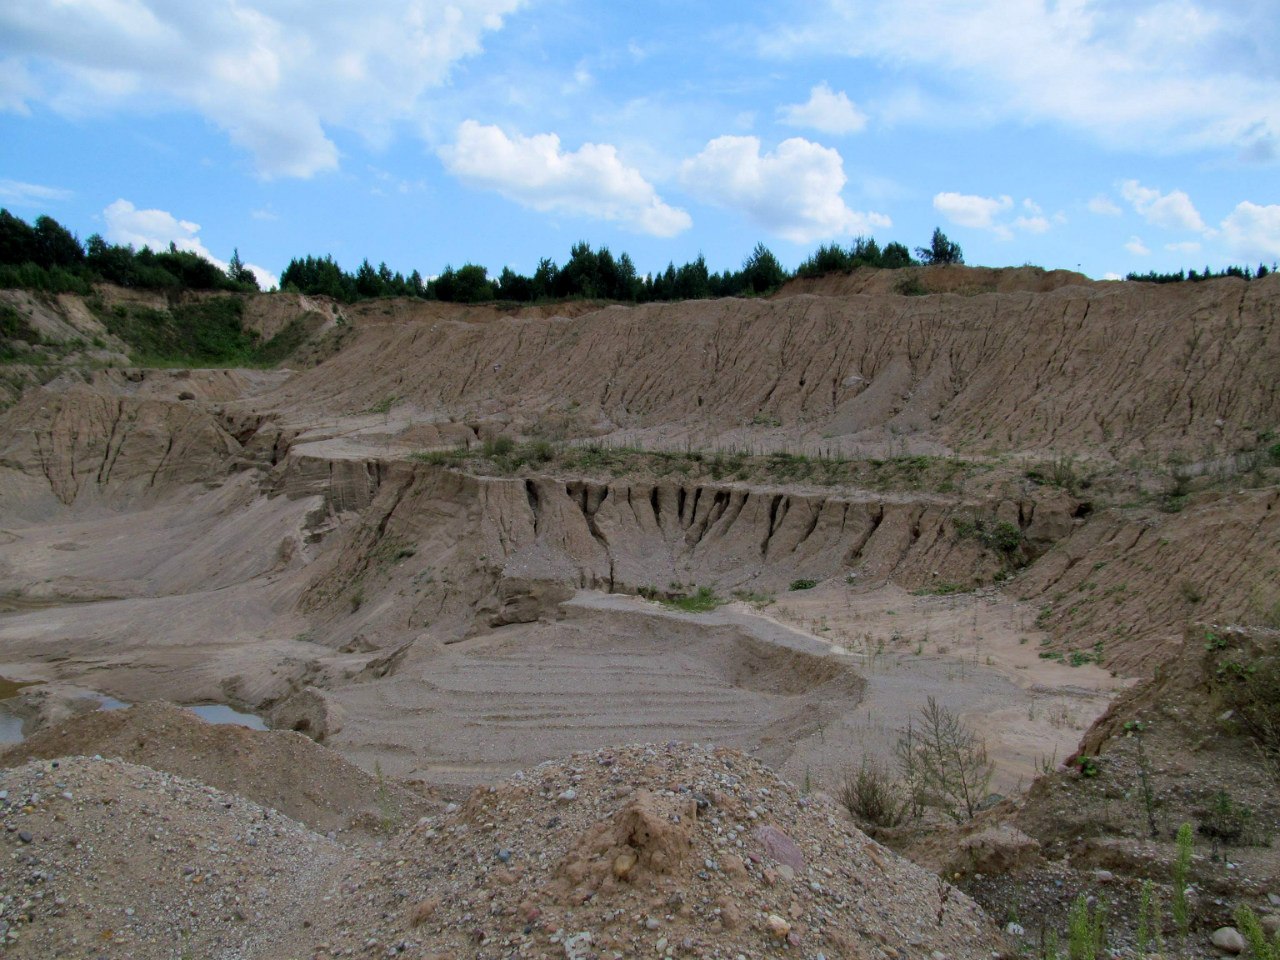 Песчаный карьер "Рутковское", изображение ландшафта.